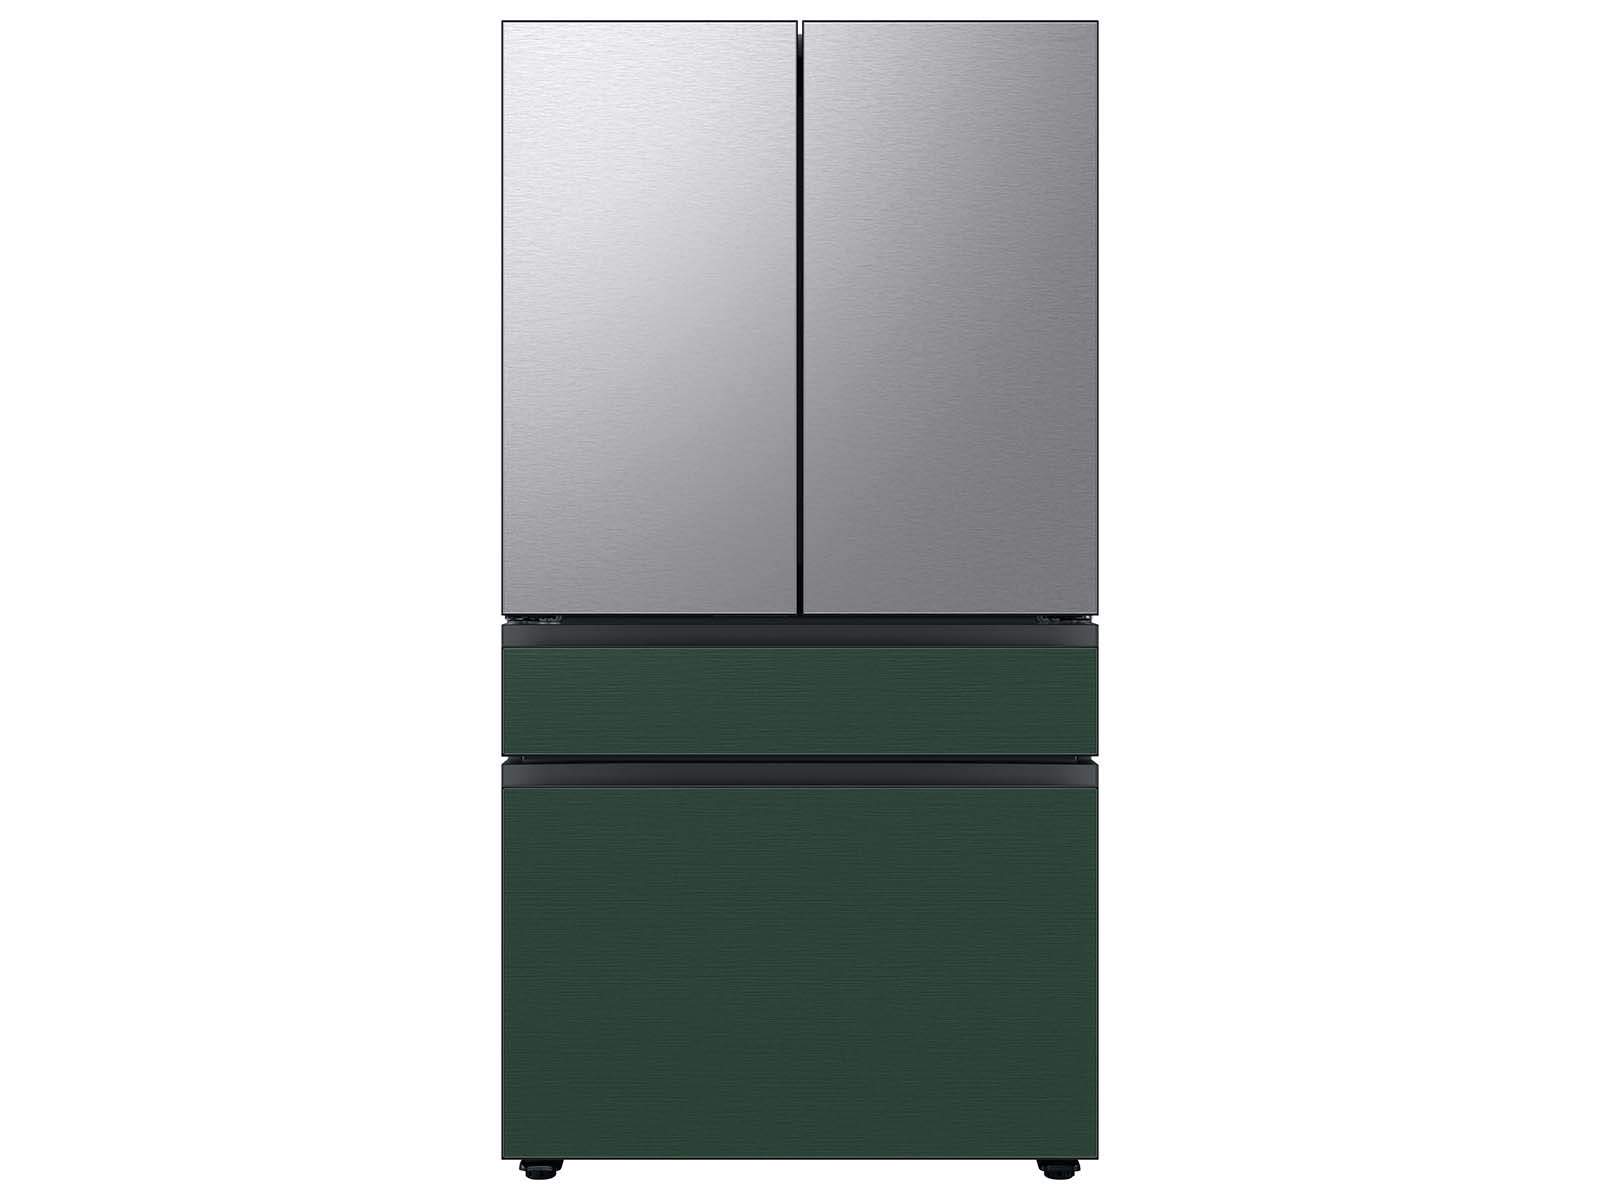 Thumbnail image of Bespoke 4-Door French Door Refrigerator Panel in Emerald Green Steel - Bottom Panel